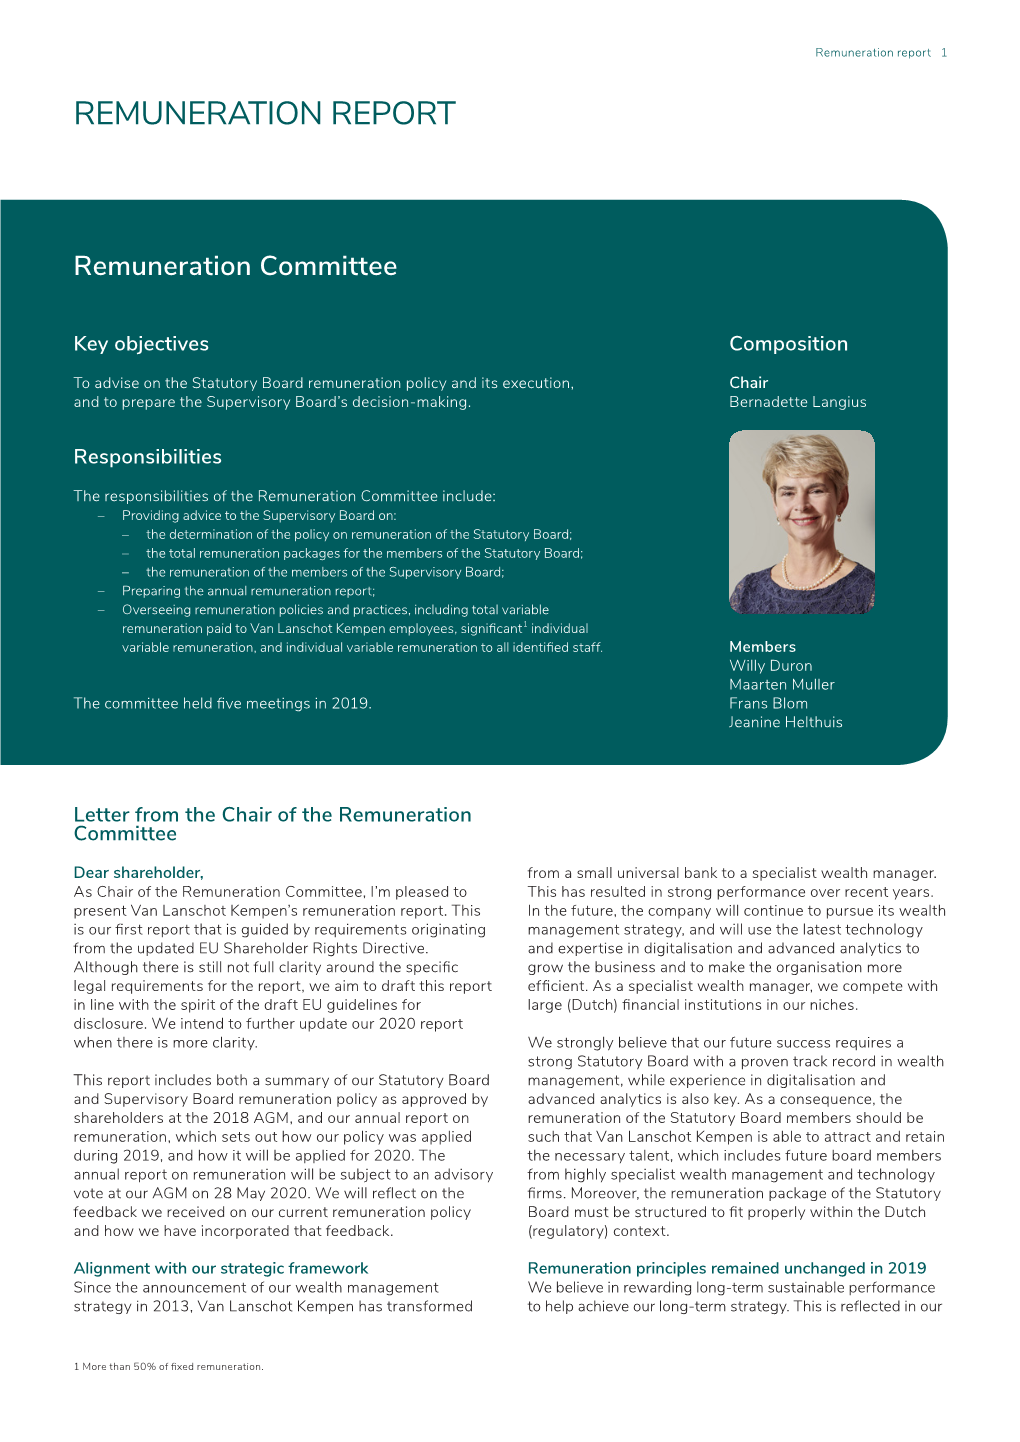 Remuneration Report 2019